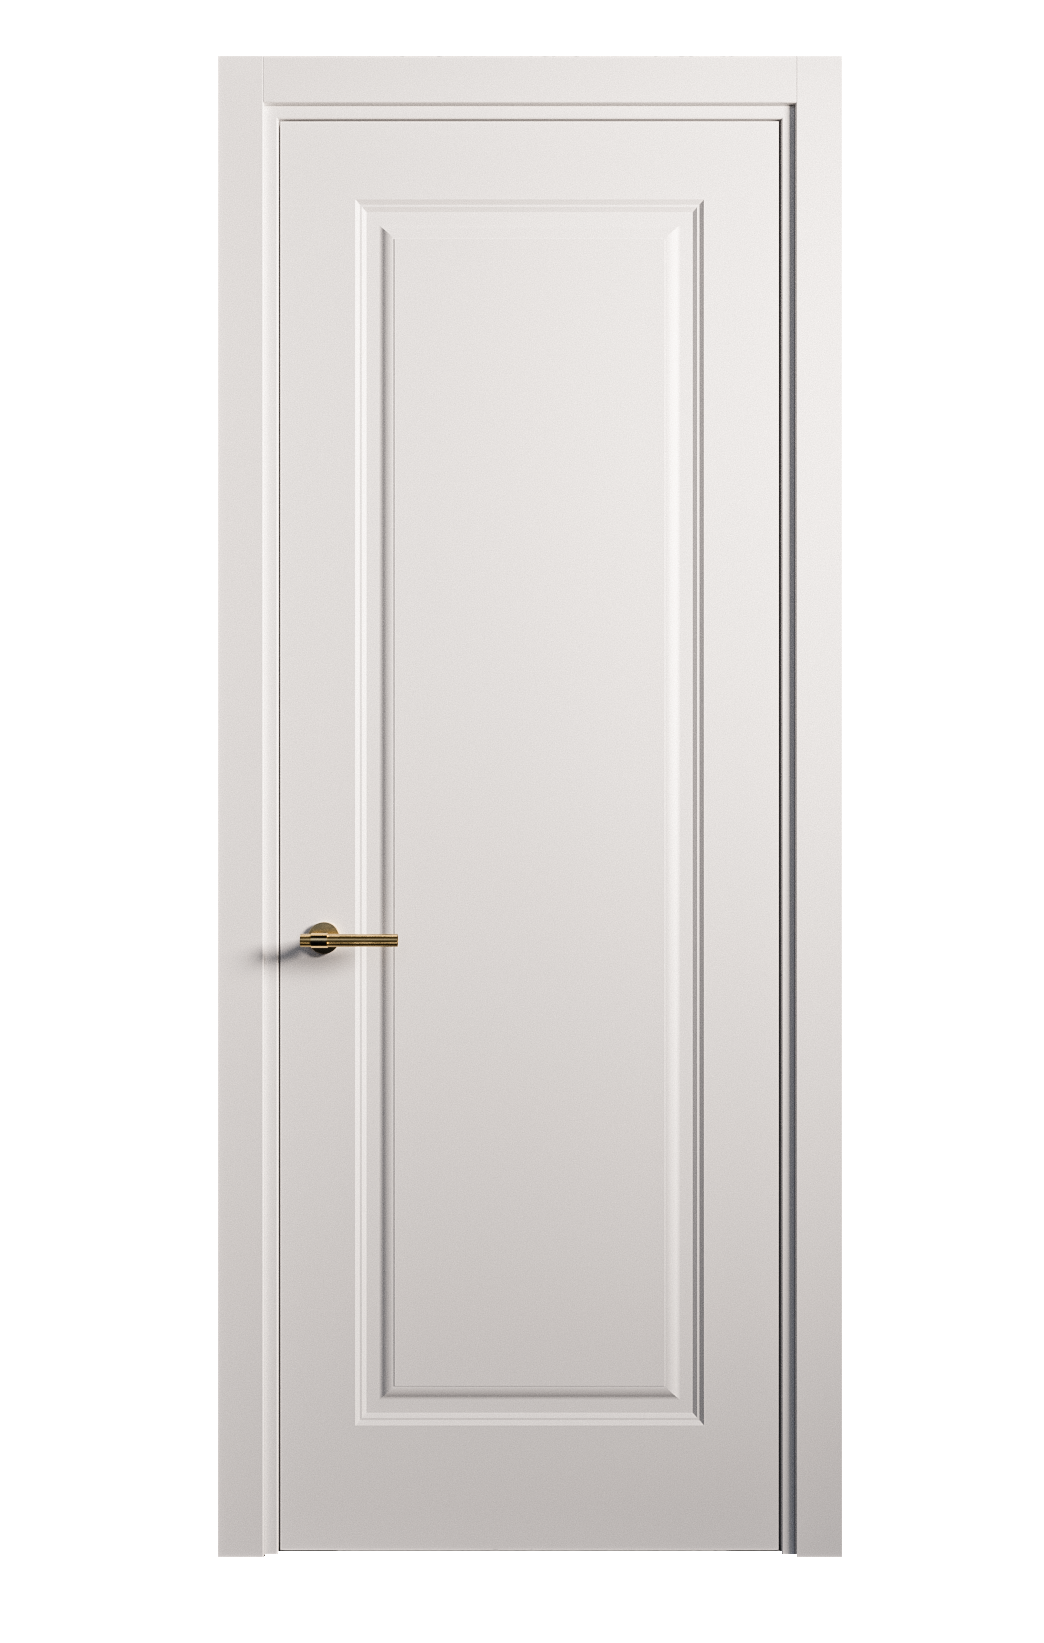 Межкомнатная дверь Вита глухая эмаль ral 9003 26128